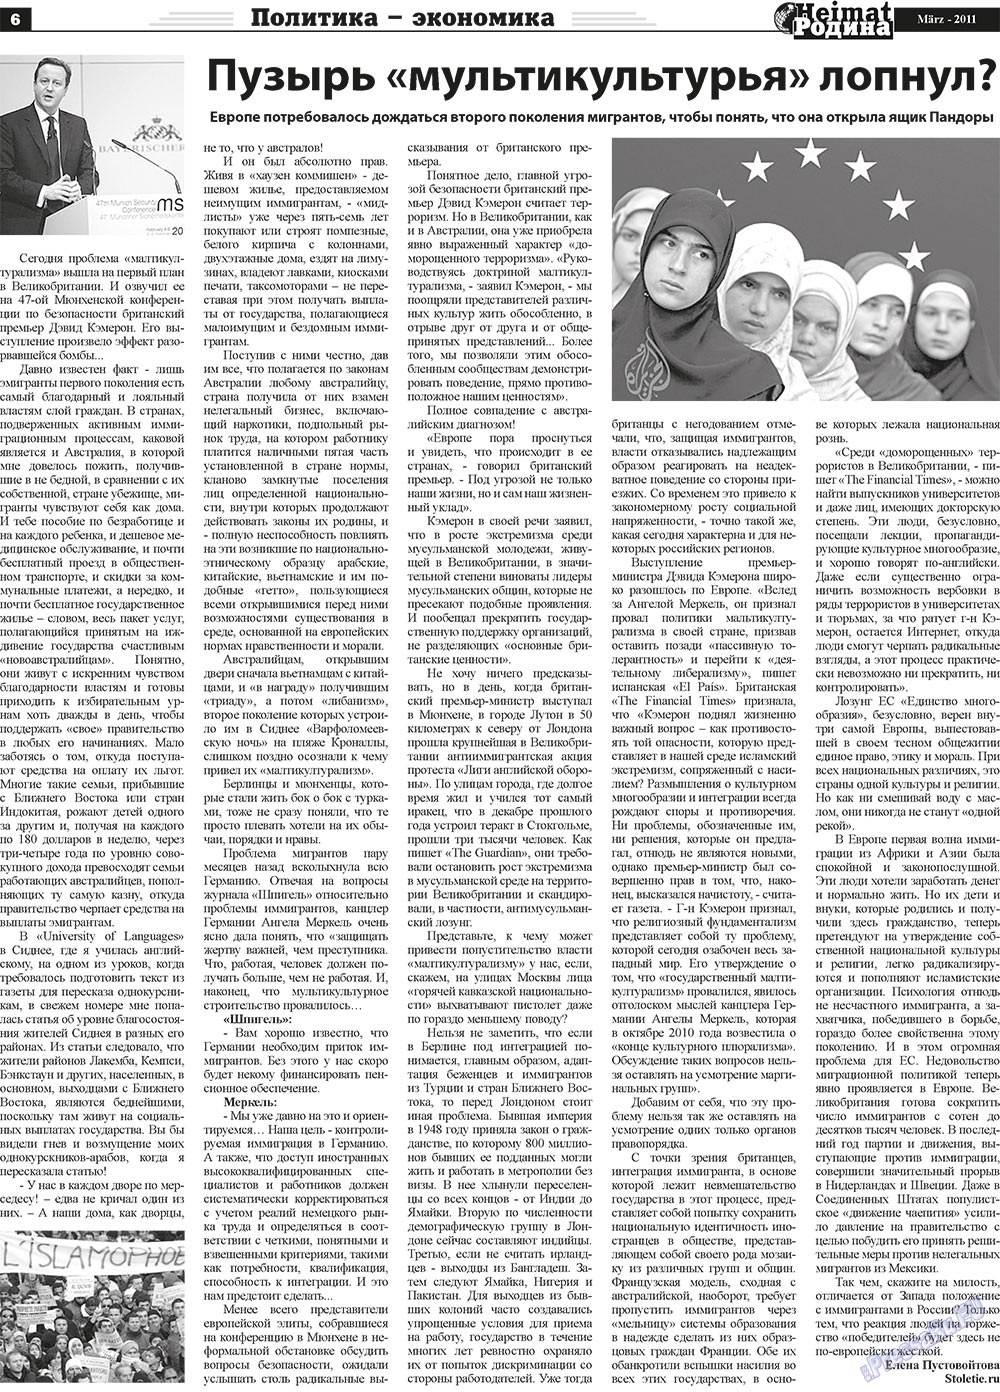 Heimat-Родина (газета). 2011 год, номер 3, стр. 6